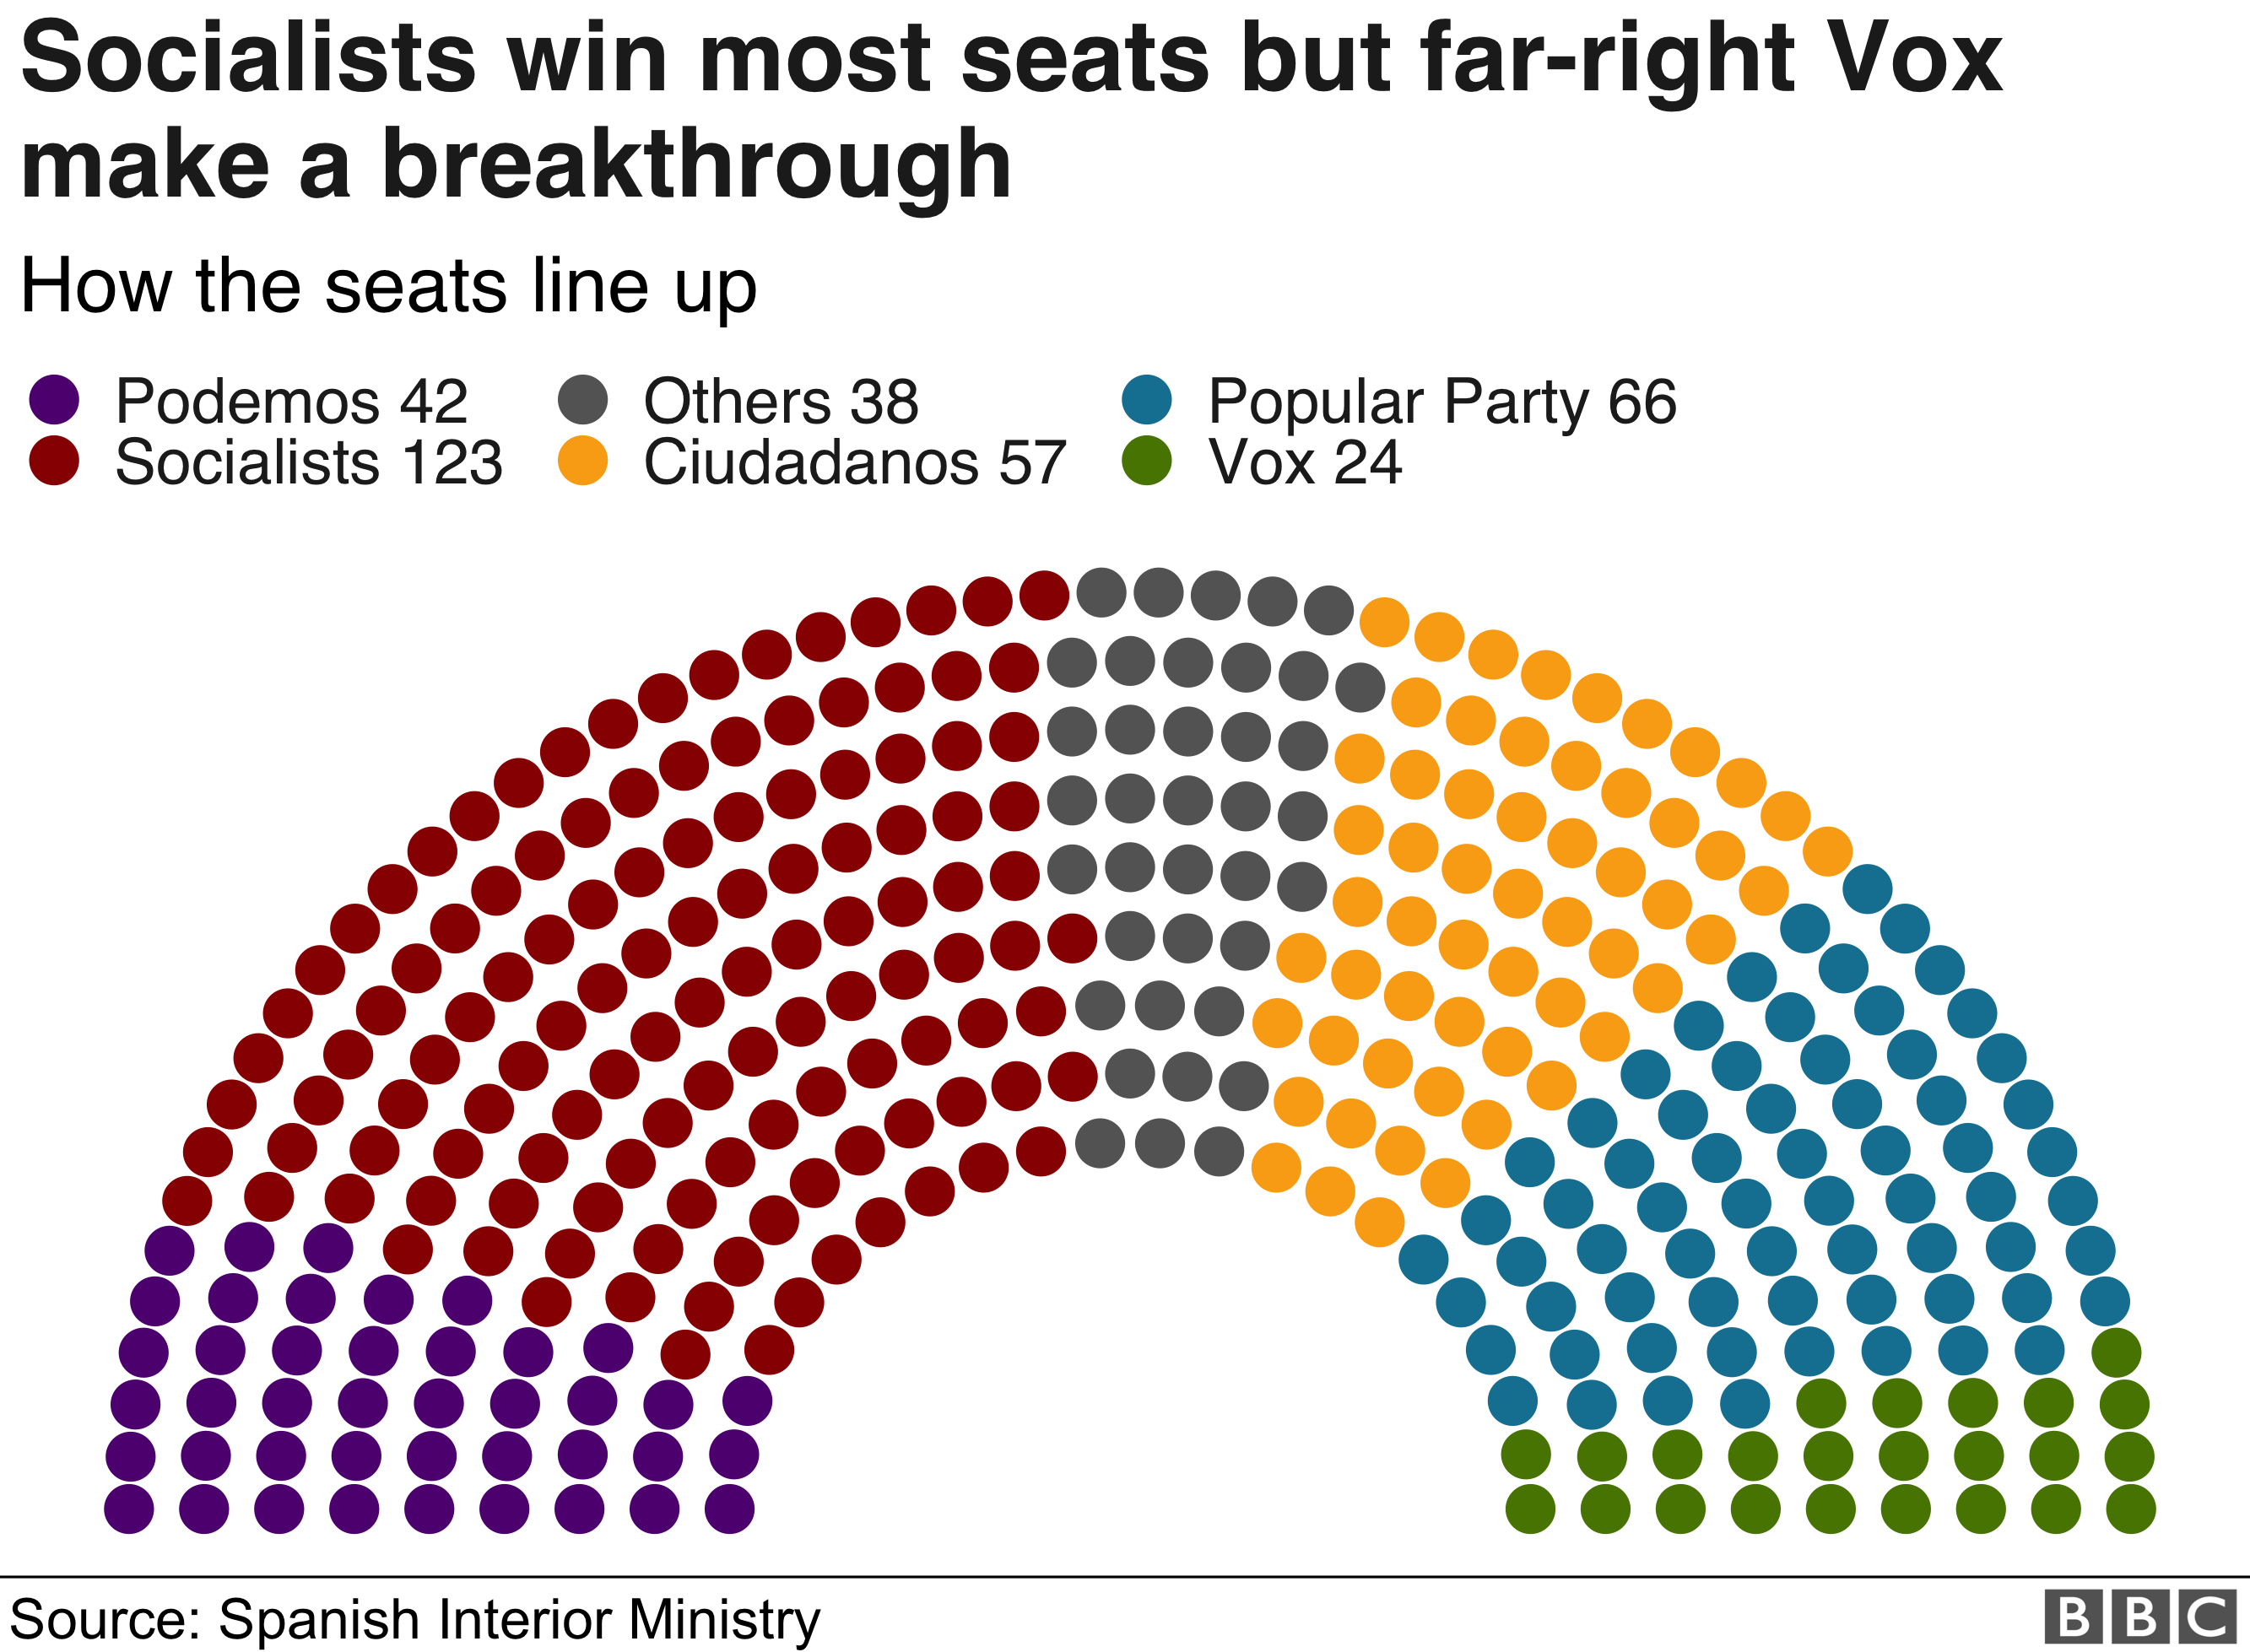 На графике показано количество мест, выигранных в парламенте, в формате полужестких цветов: Социалисты 123, Народная партия 66, Сьюдаданос 57, Подемос 42, Vox 24, Другие 38